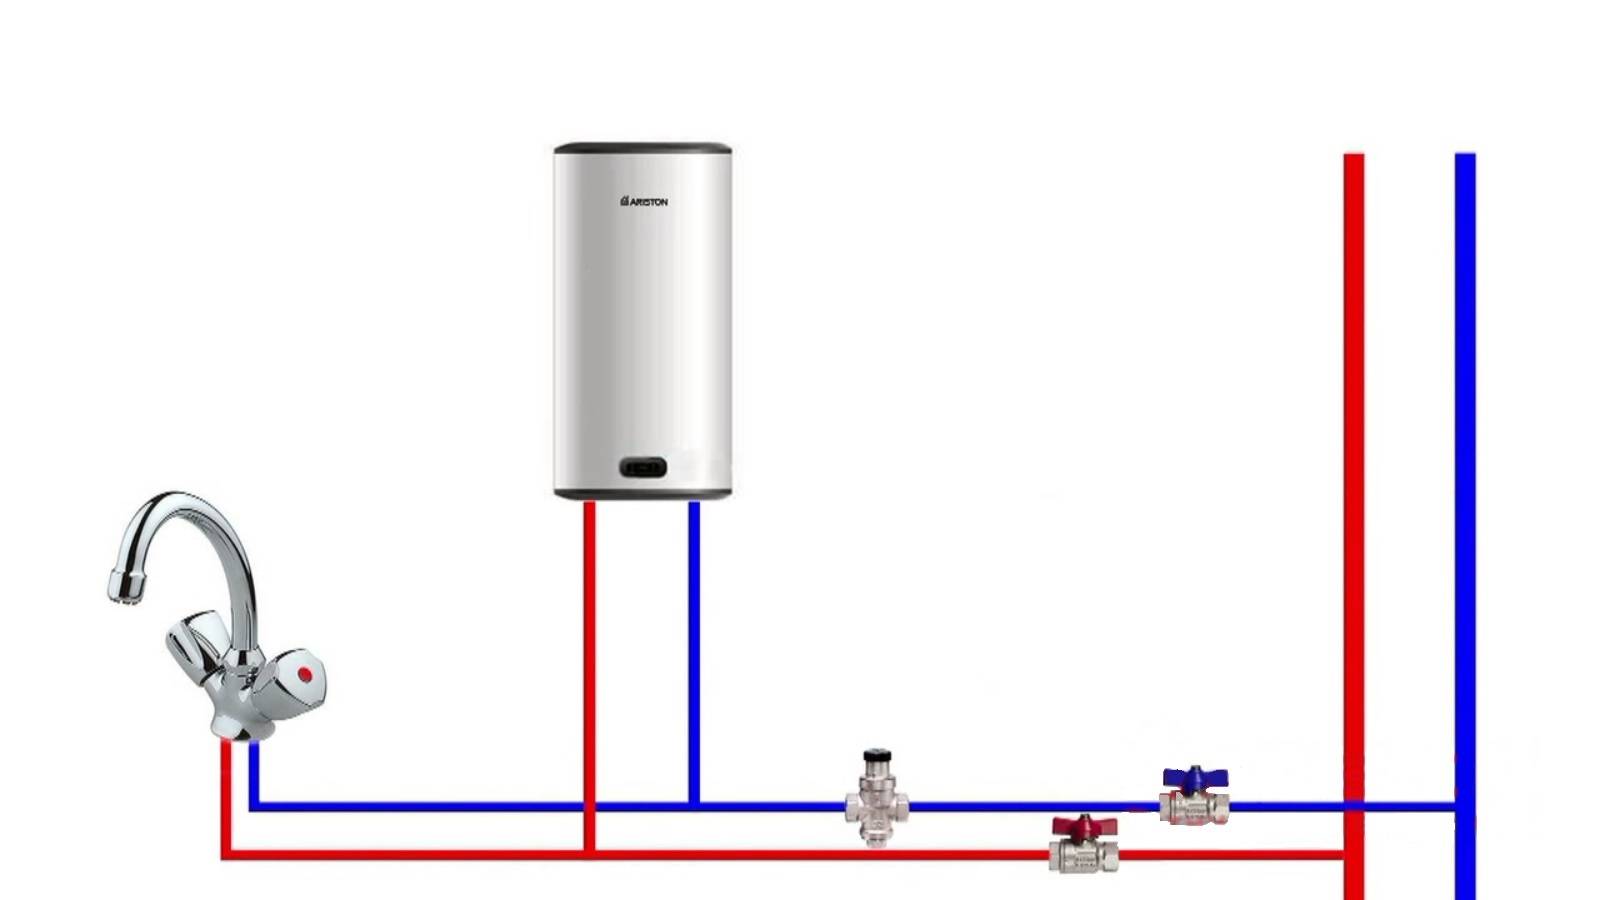 Как правильно установить и подключить бойлер к водопроводу и электросети в квартире или доме